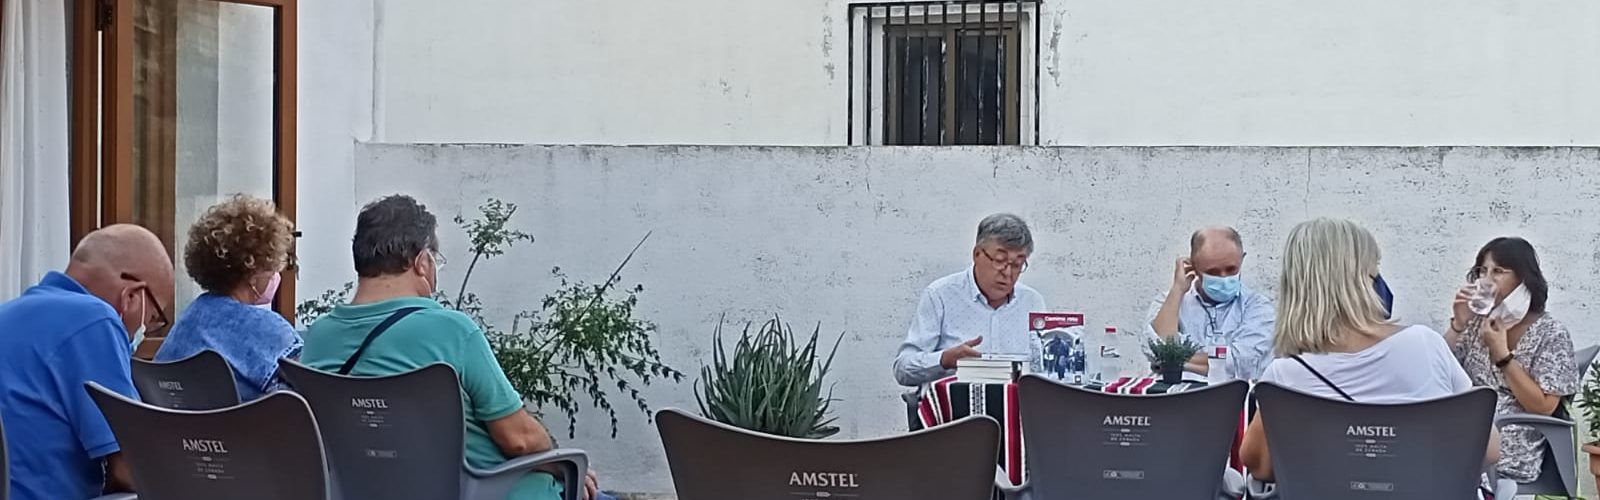 Javier Andrés presenta a Vallibona la seua primera novel·la, “Camino roto”